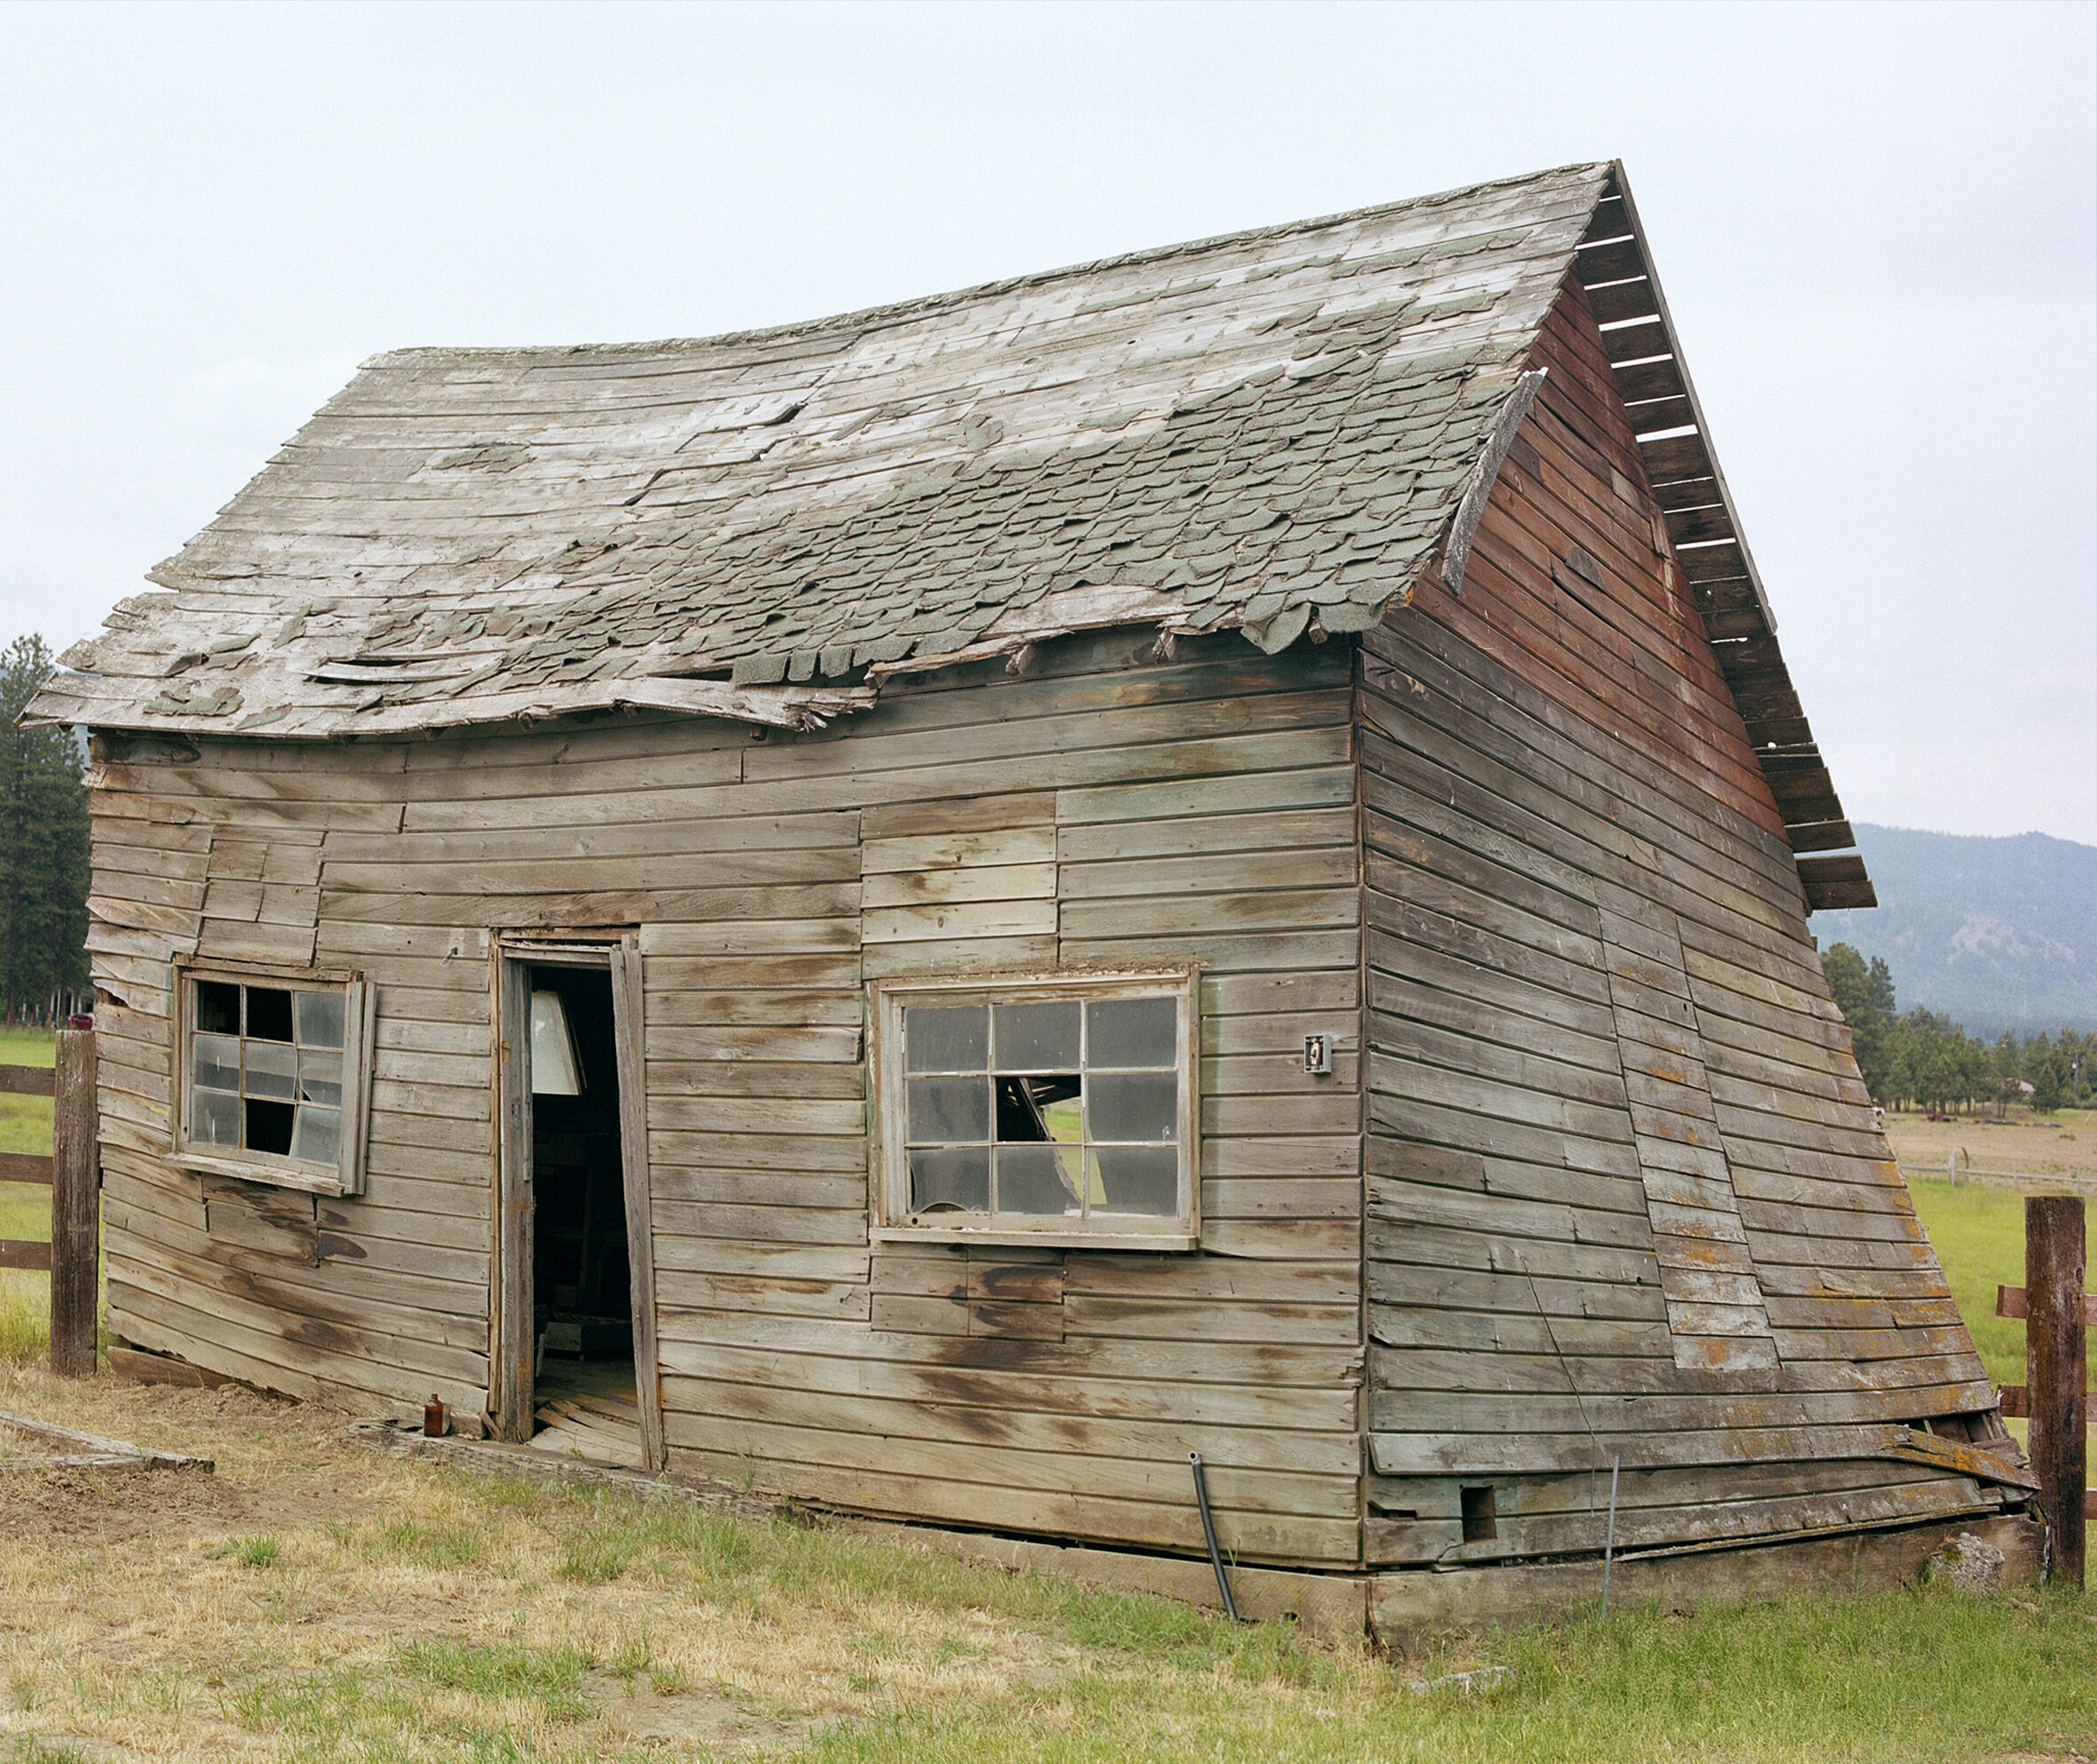  Leaning House, Washington State 